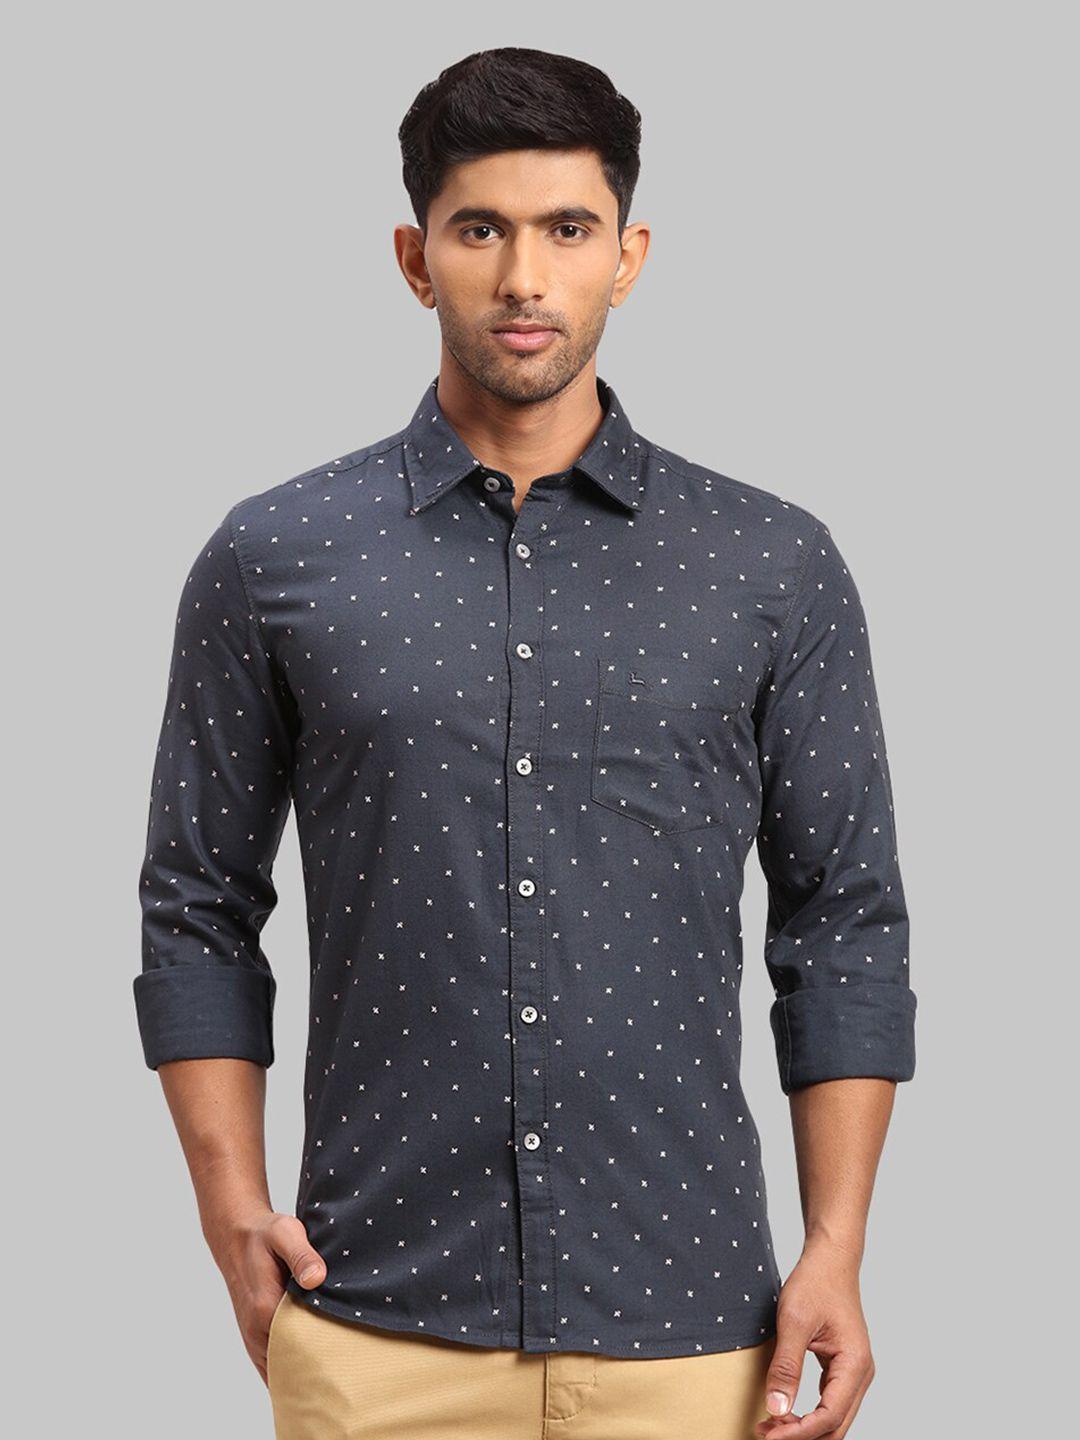 parx-men-slim-fit-floral-printed-cotton-casual-shirt